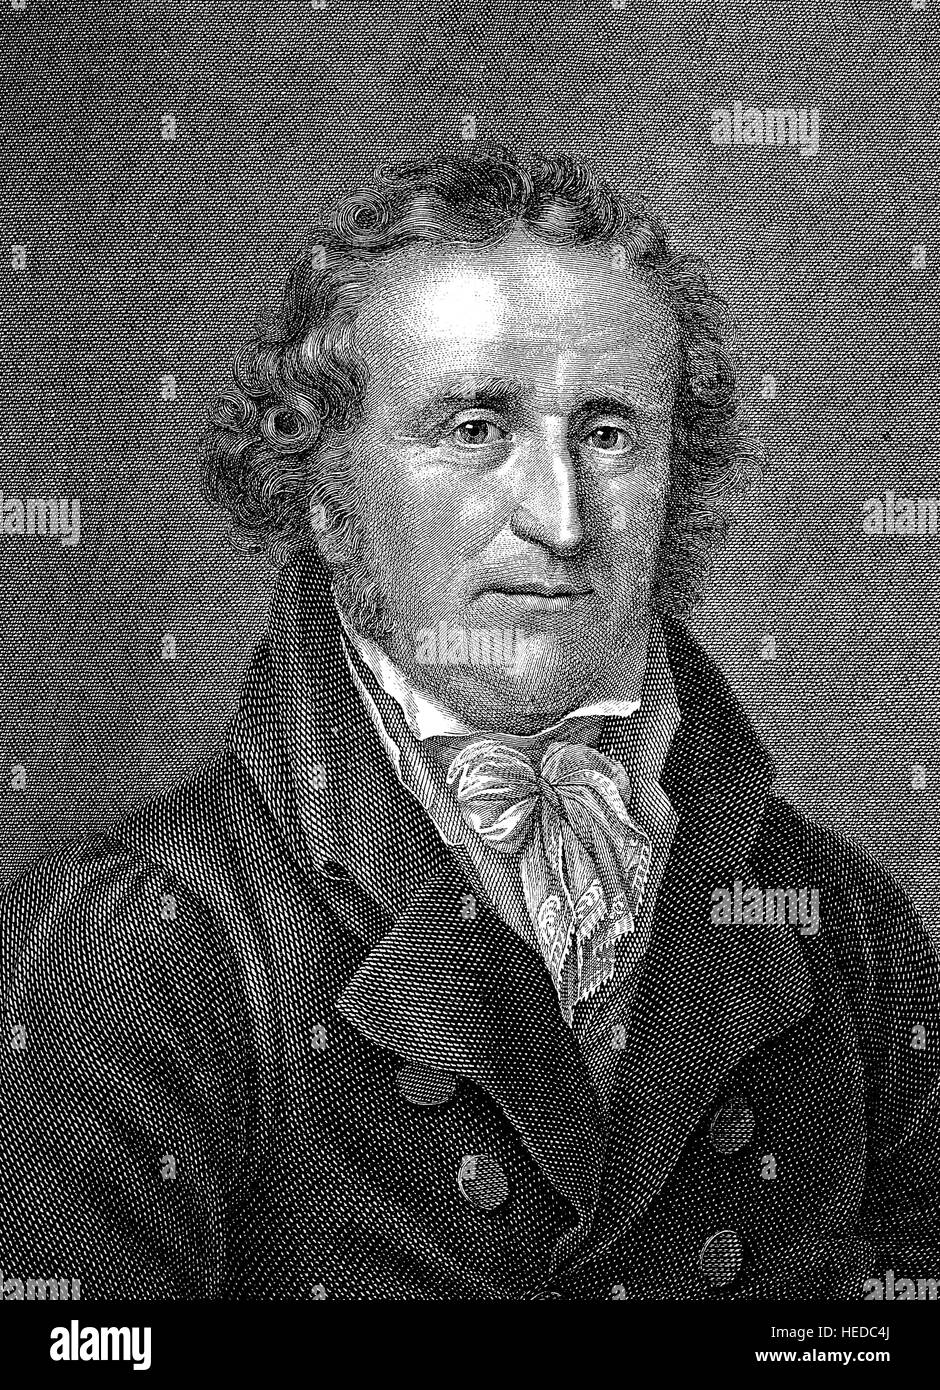 Friedrich Leopold Graf zu Stolberg-Stolberg, 1750-1819, un poète allemand, avocat et traducteur, d'une gravure sur bois de 1880, l'amélioration numérique Banque D'Images